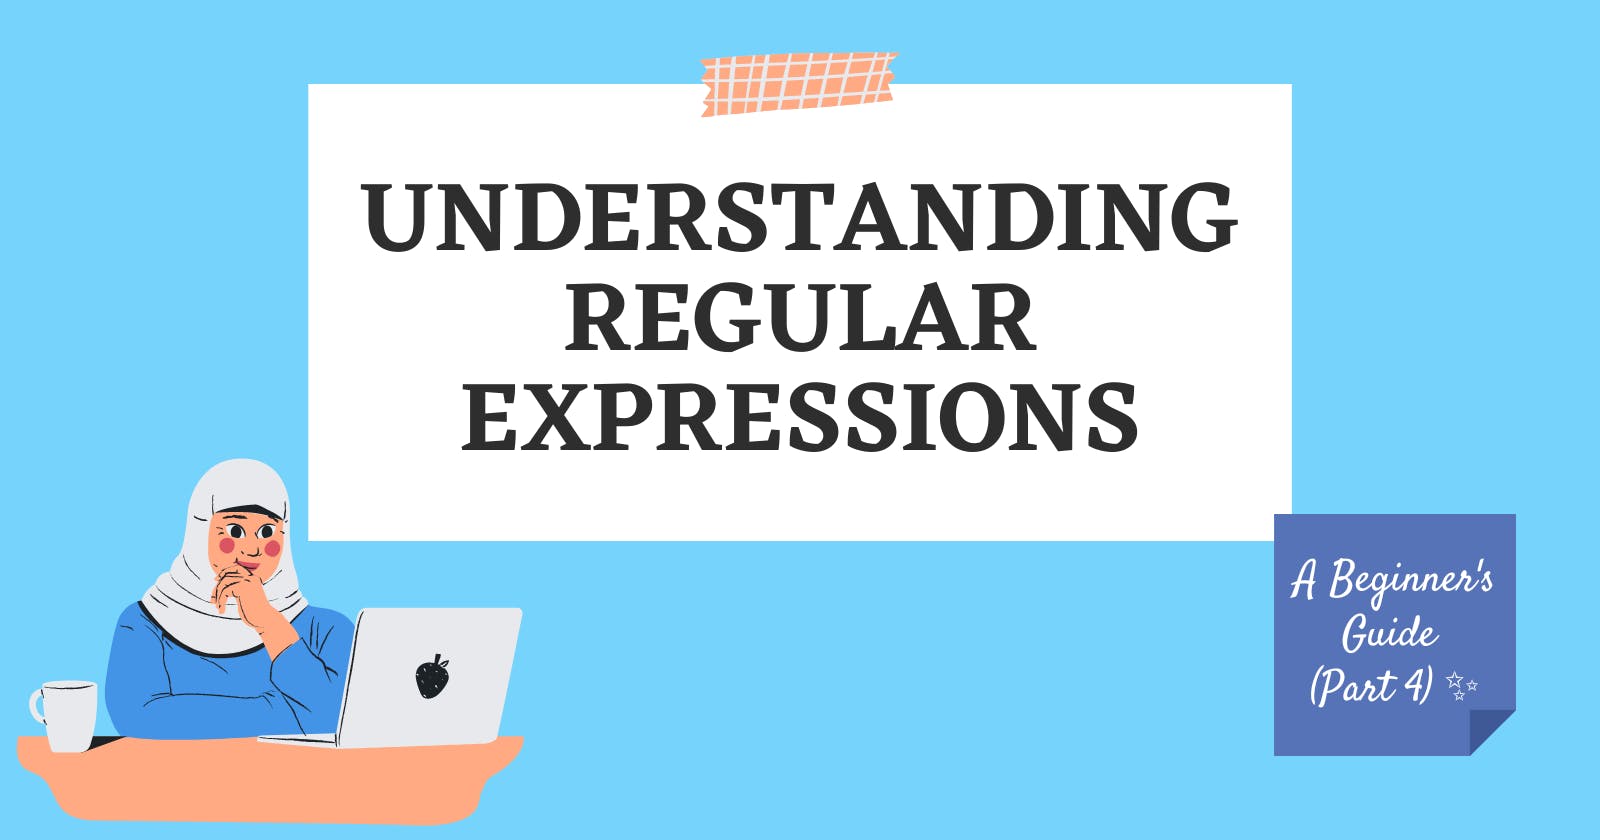 Understanding Regular Expressions: A Beginner's Guide 
(Part 4) ✨